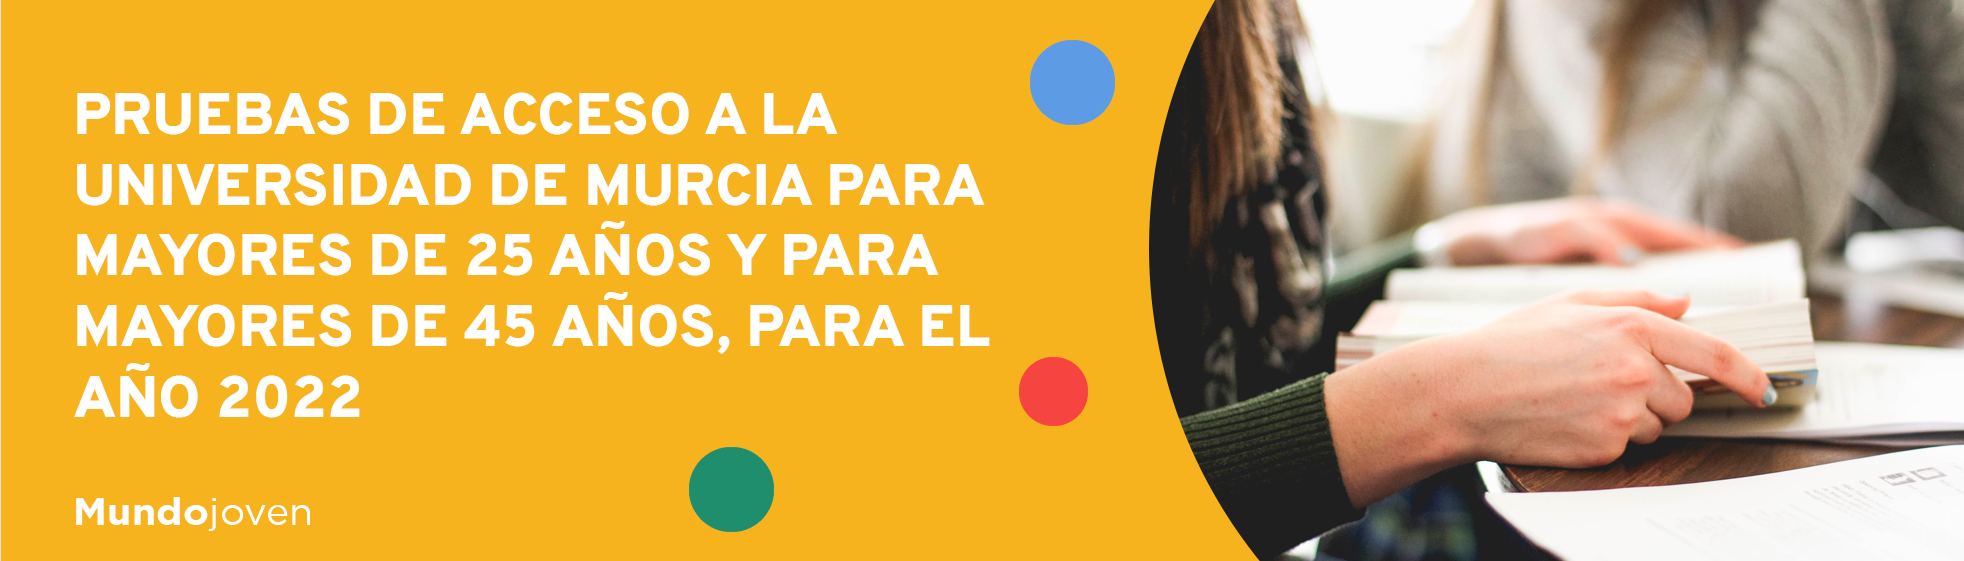 Pruebas de acceso a la Universidad de Murcia para mayores de 25 años y para mayores de 45 años, para el año 2022